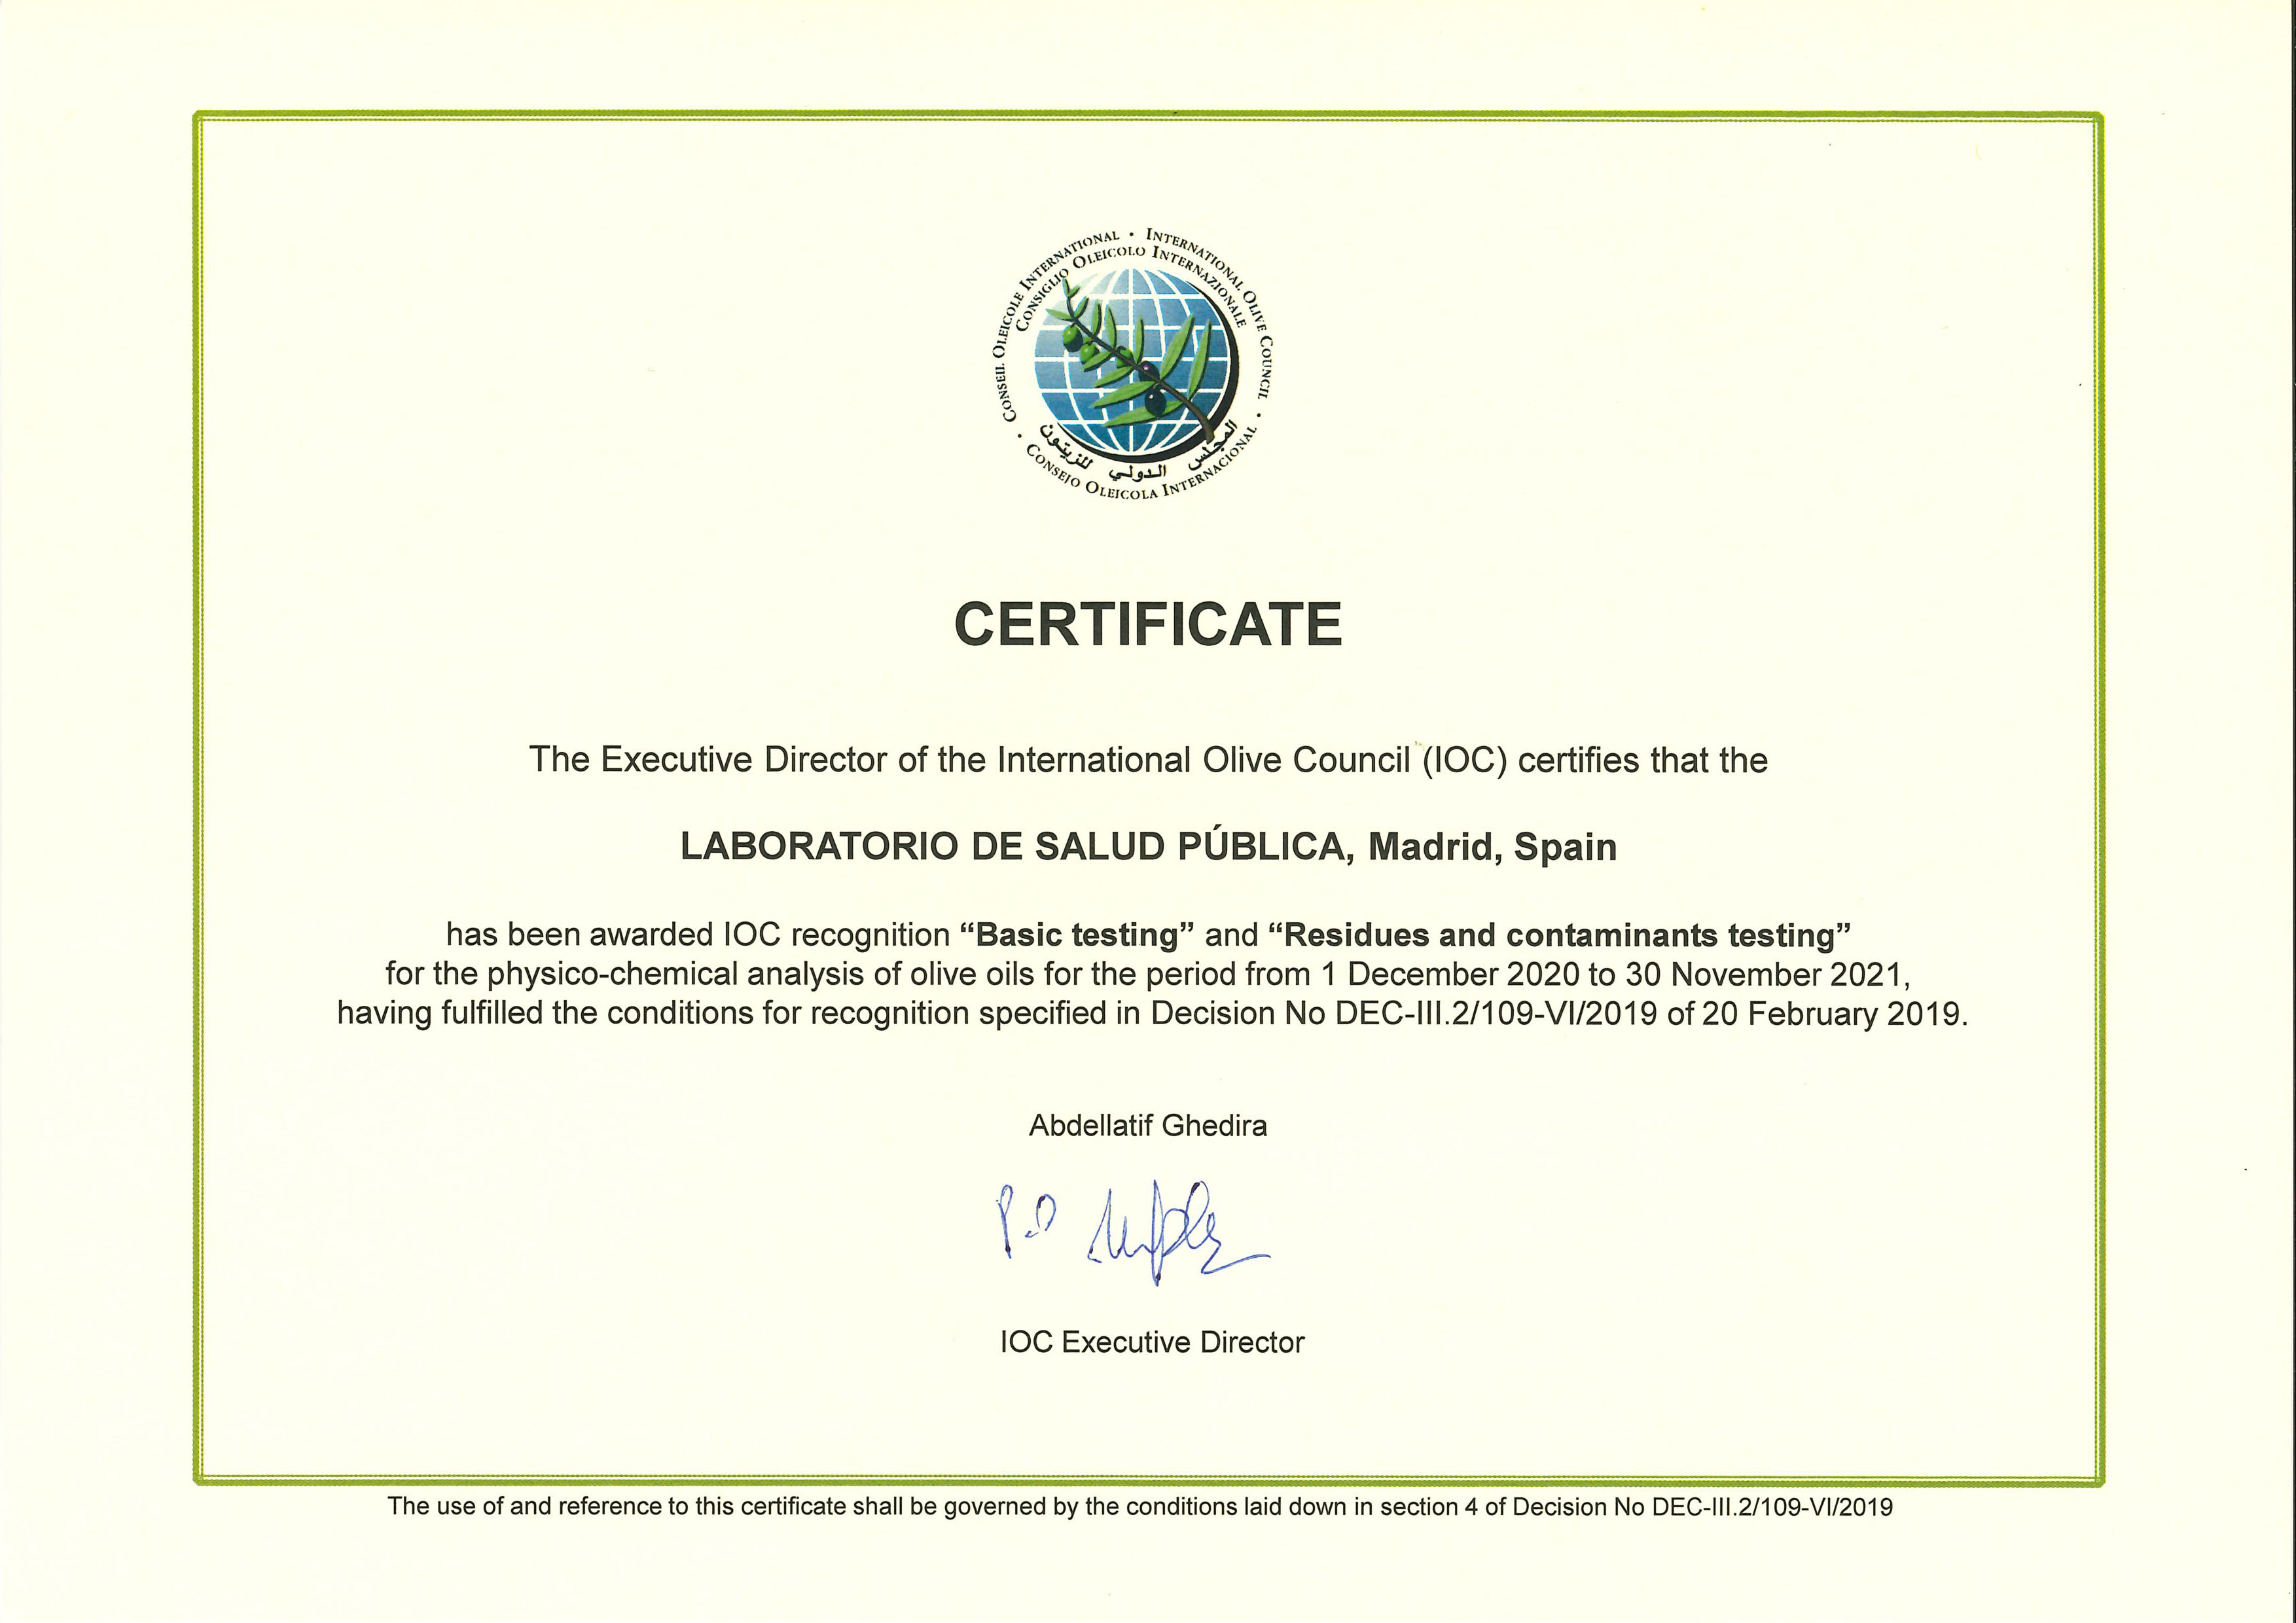 El Laboratorio de Salud Pública obtiene el Certificado de reconocimiento del Consejo Oleícola Internacional